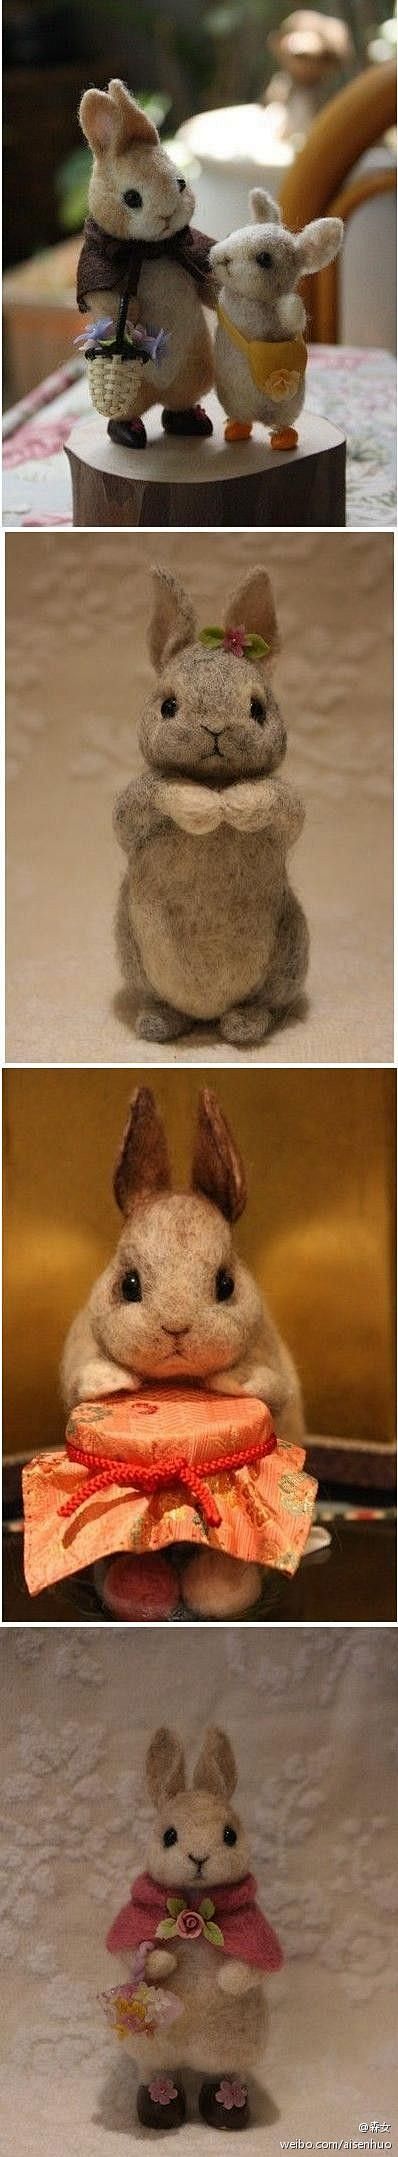 rabbit: 